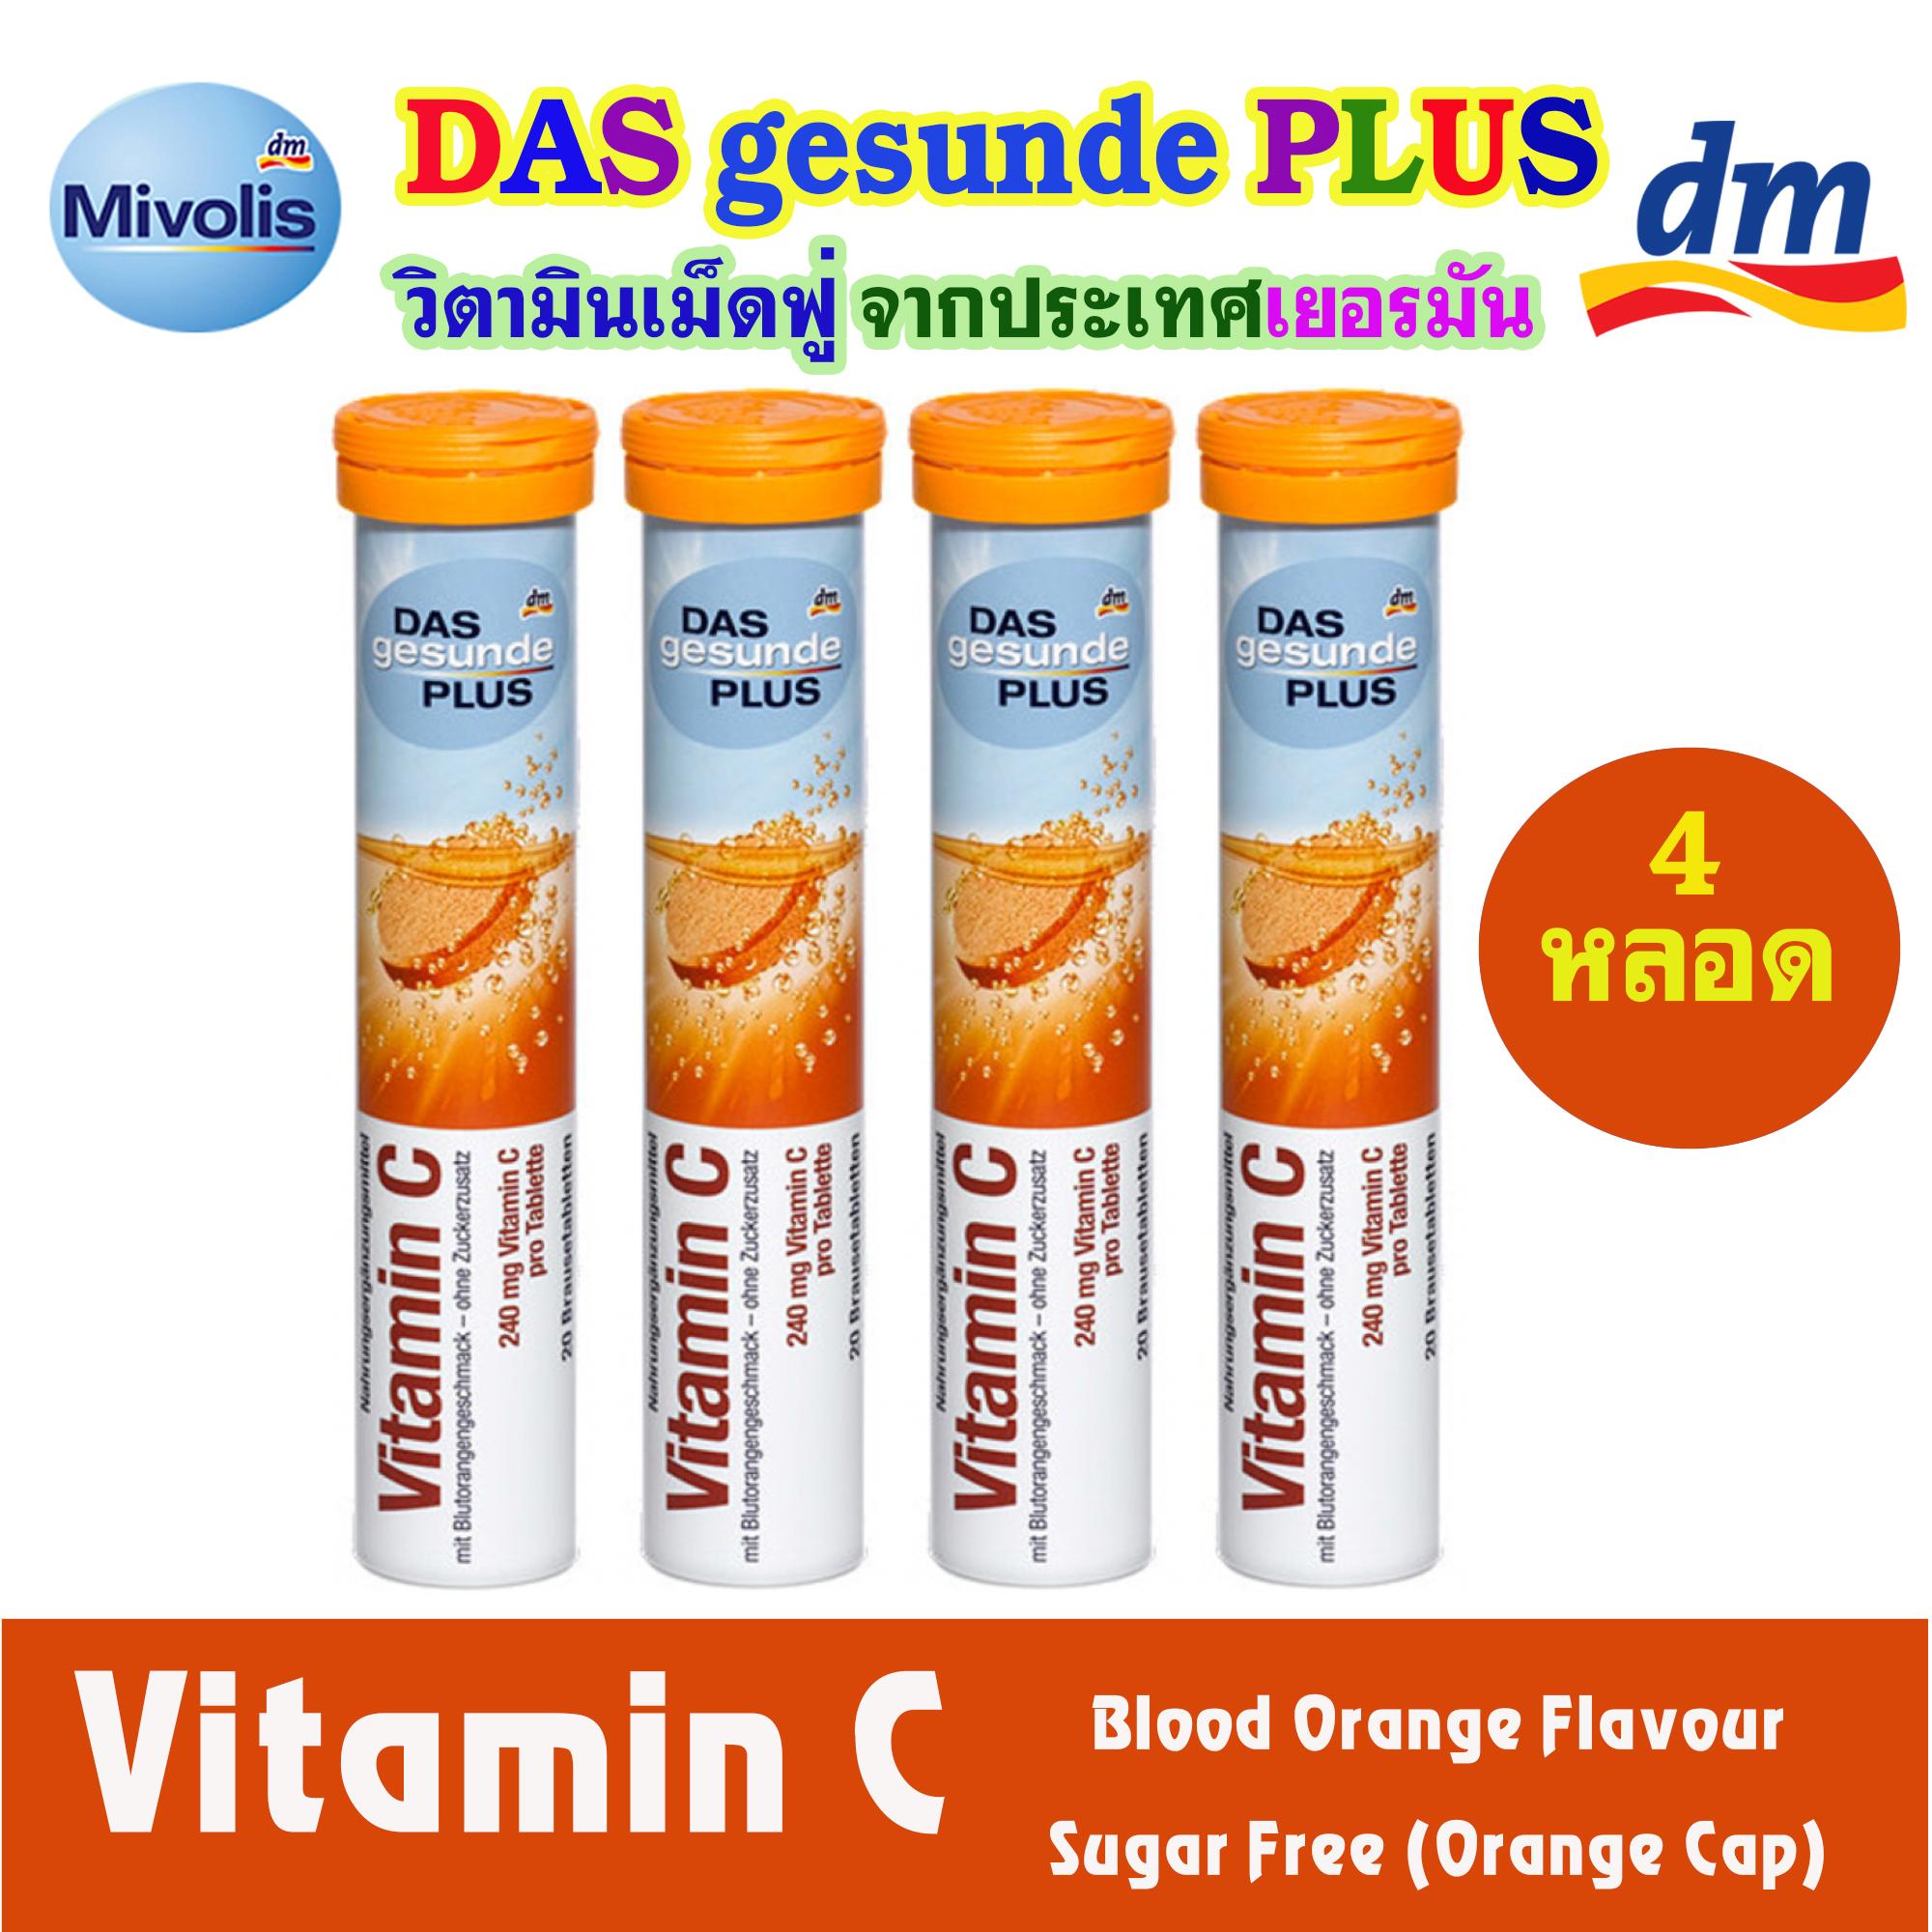 DAS gesunde PLUS วิตามิน เม็ดฟู่ ละลายน้ำ สีส้ม (Vitamin C) หลอดละ 20 เม็ด จำนวน 4 หลอด